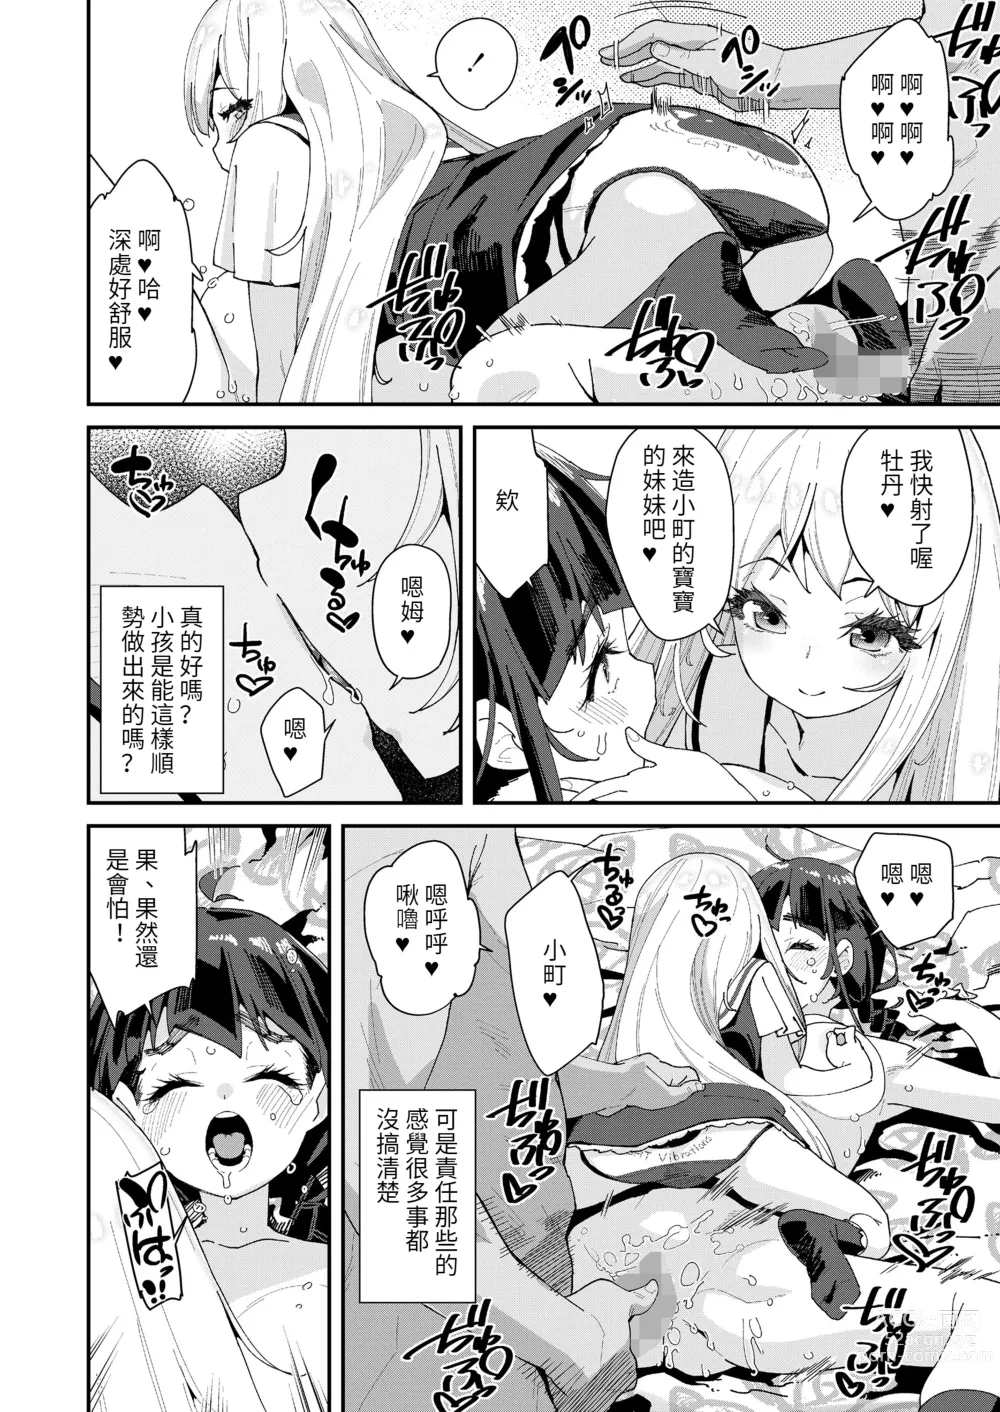 Page 8 of manga Mitsu to Chou Saishuuwa